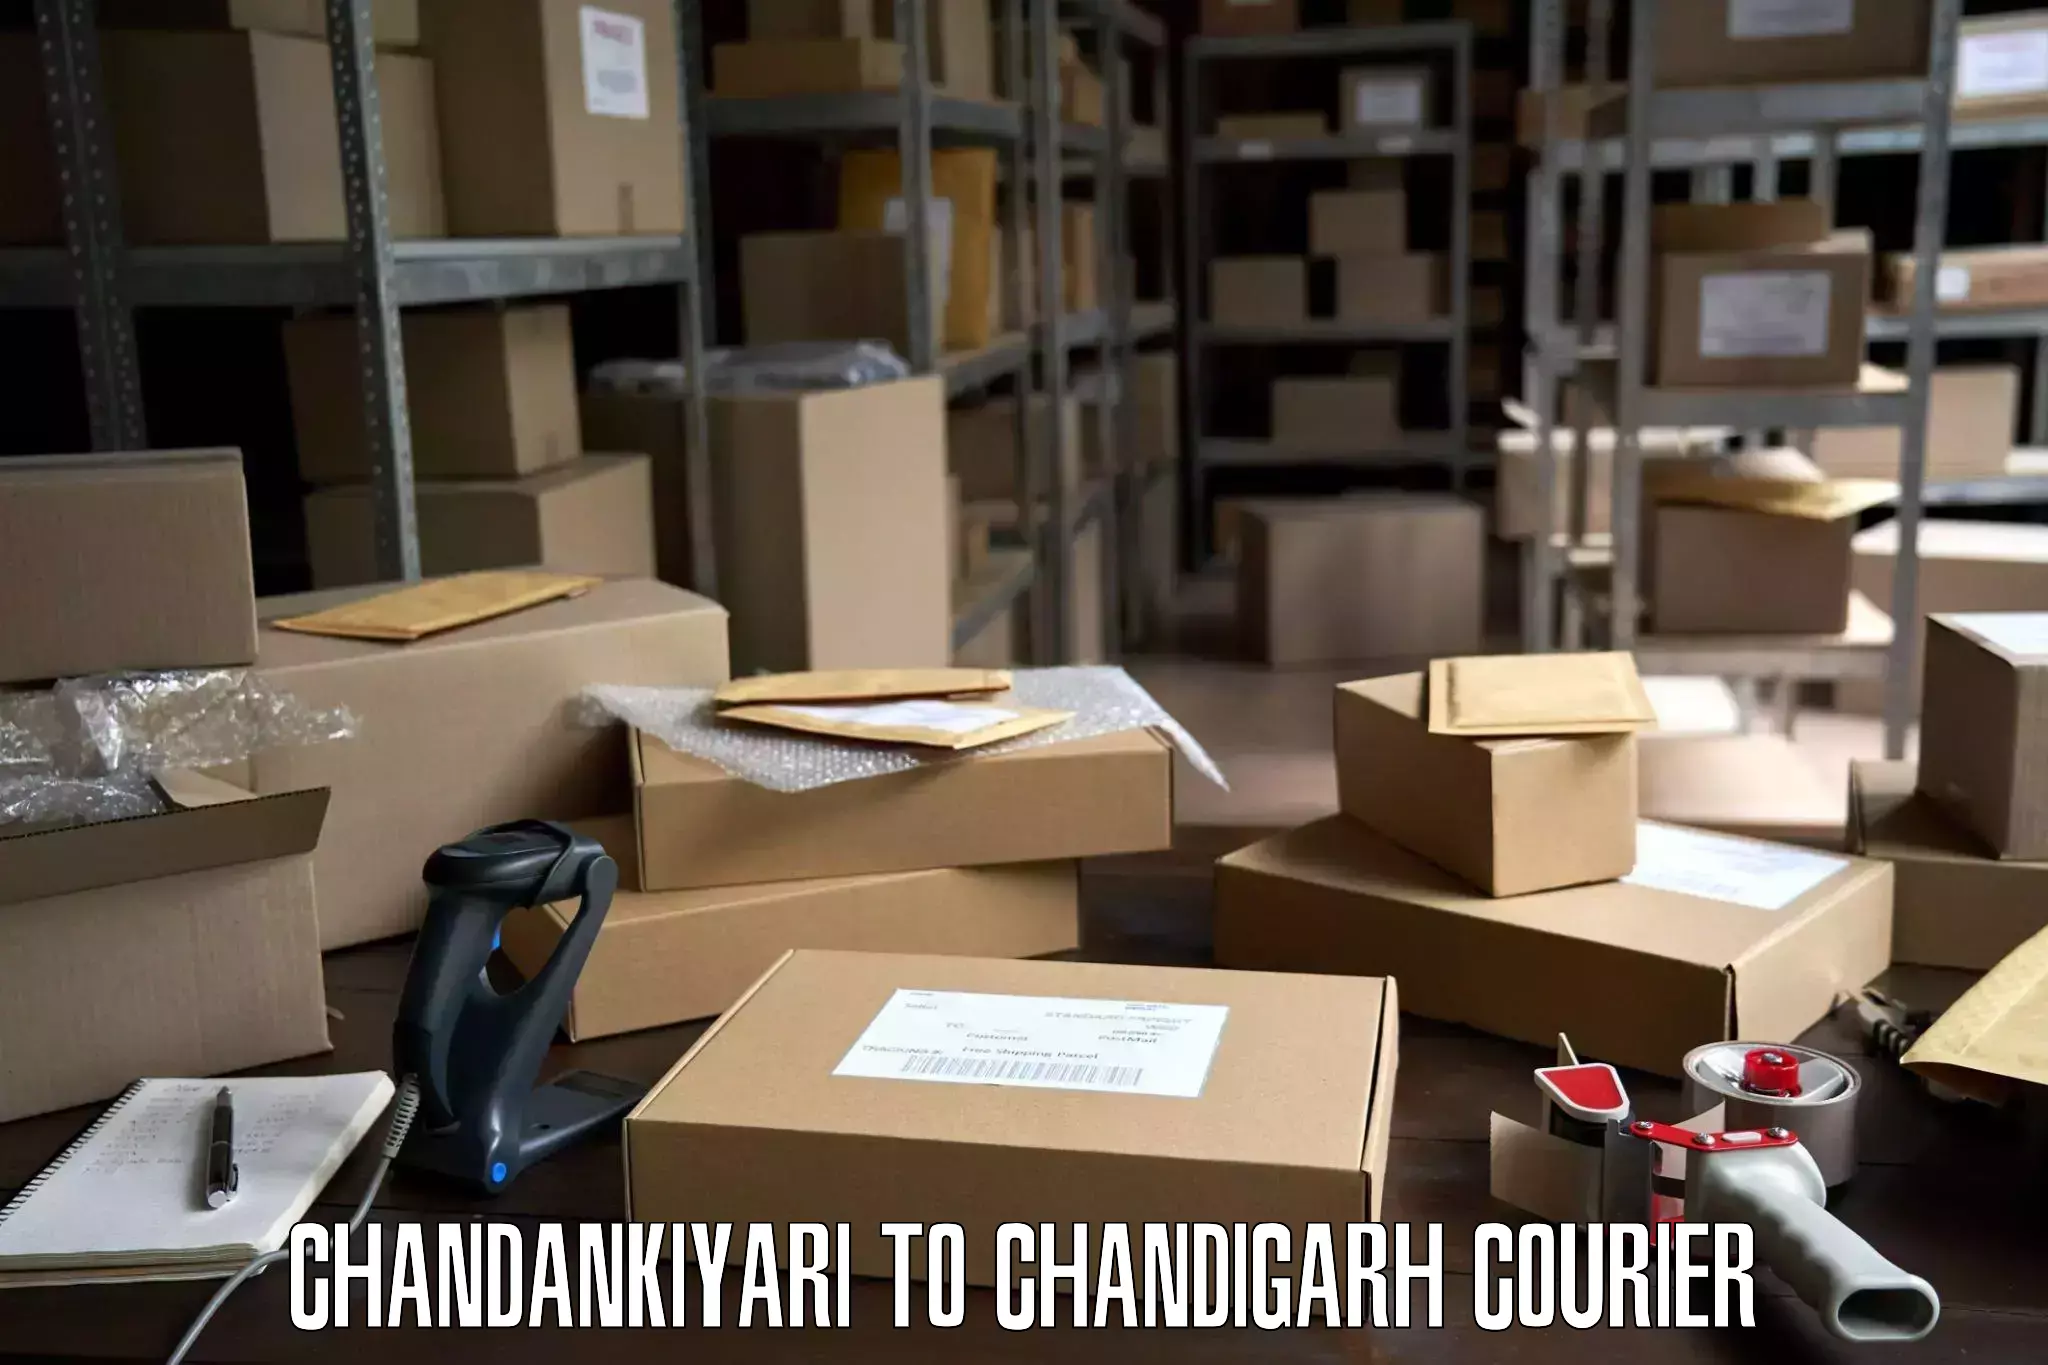 Home moving service Chandankiyari to Chandigarh